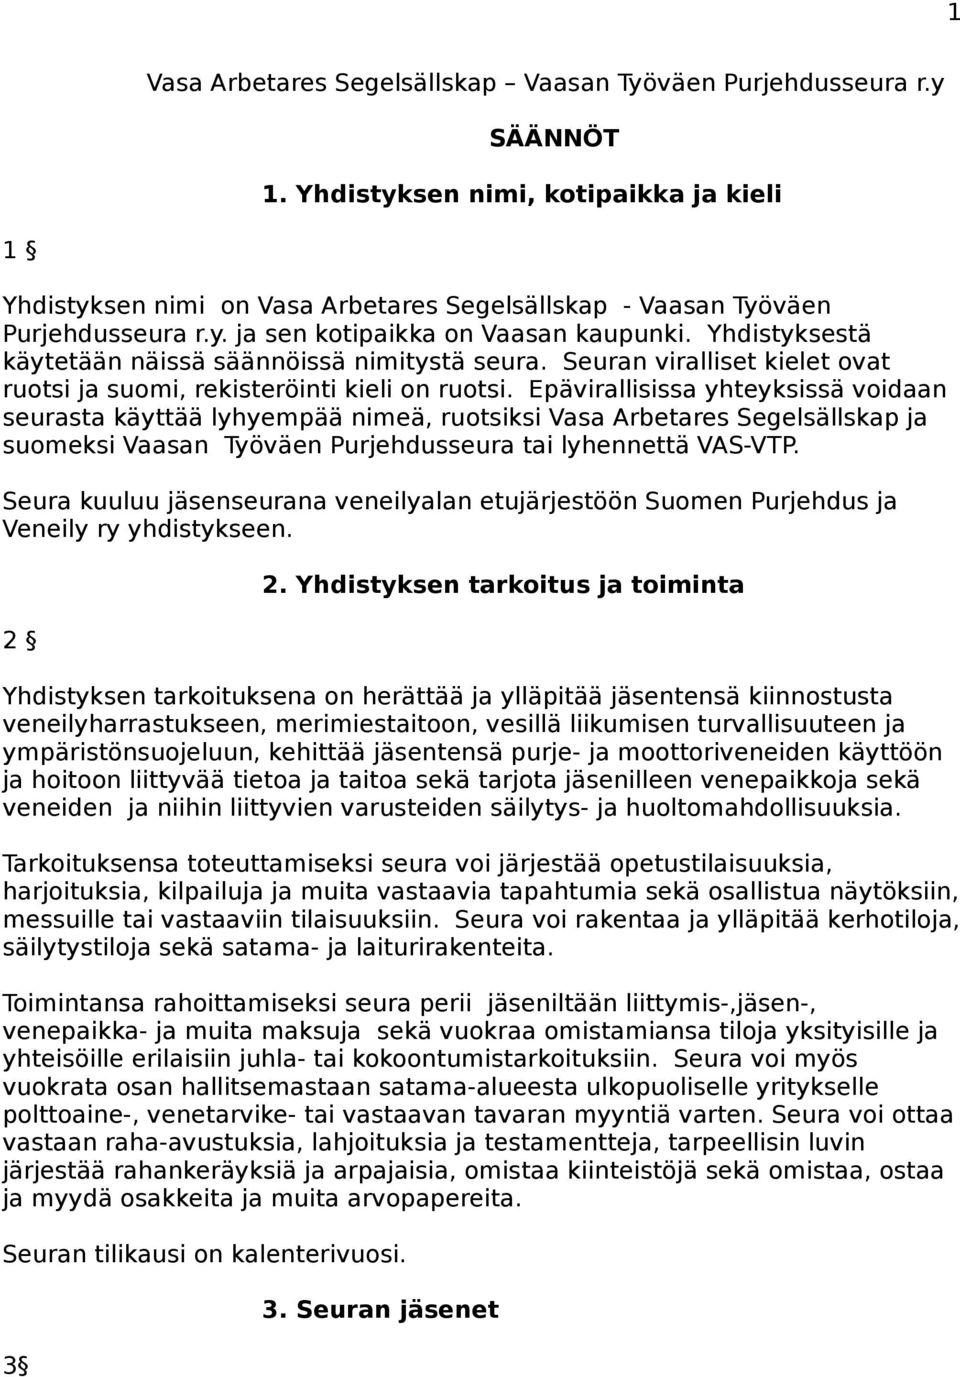 Epävirallisissa yhteyksissä voidaan seurasta käyttää lyhyempää nimeä, ruotsiksi Vasa Arbetares Segelsällskap ja suomeksi Vaasan Työväen Purjehdusseura tai lyhennettä VAS-VTP.